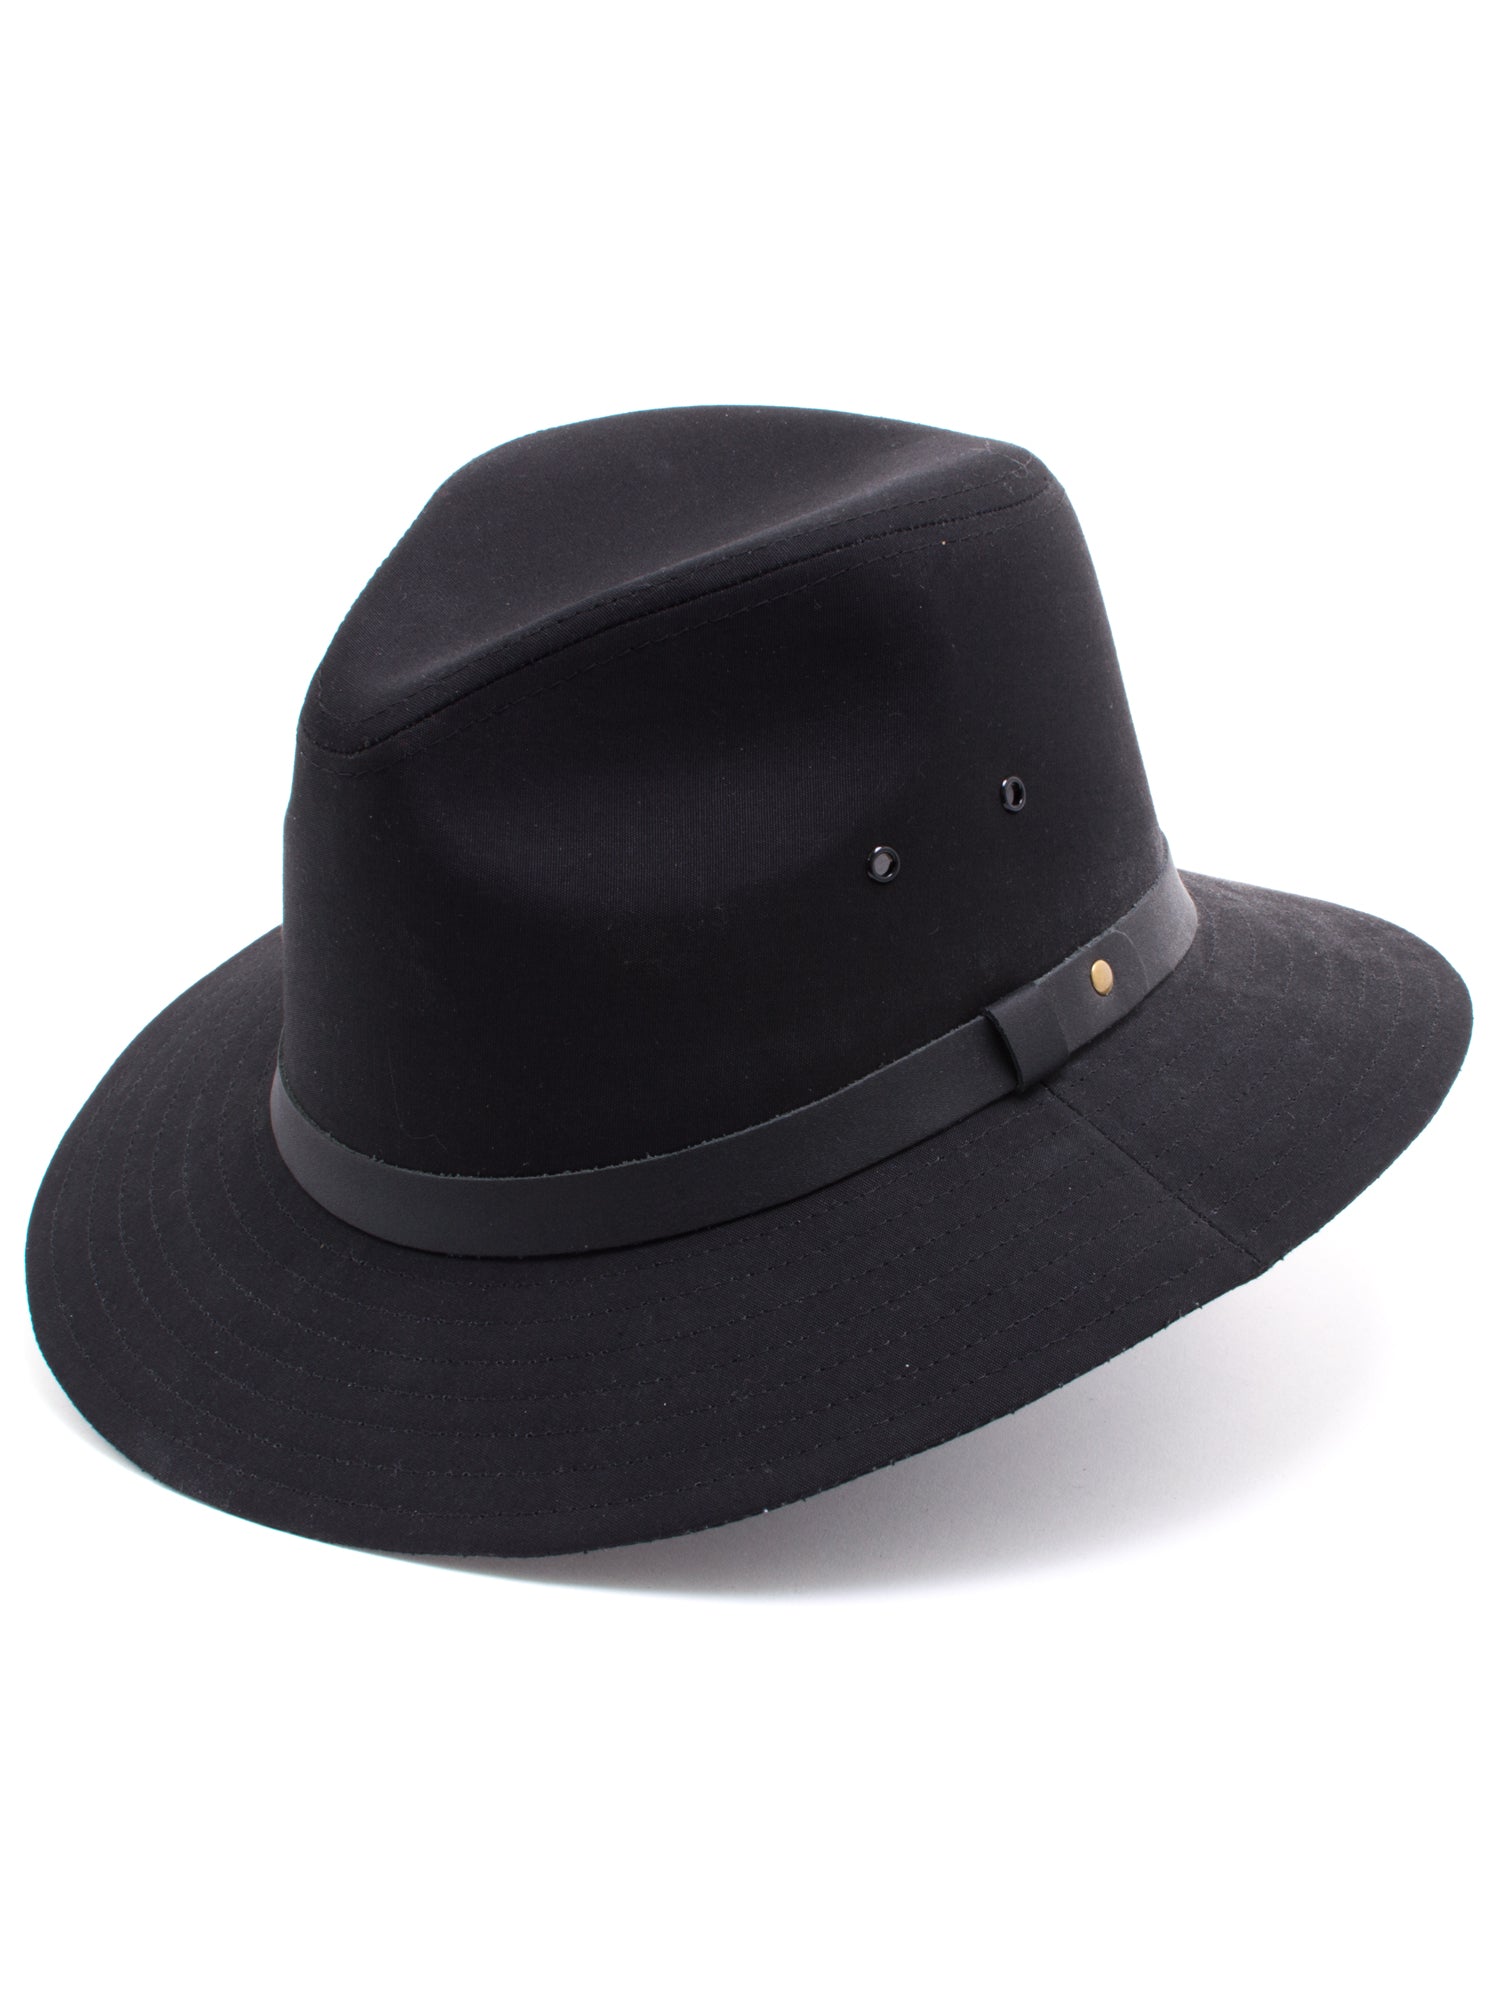 Dobbs Cotton Blend Gable Men's Hats in Black